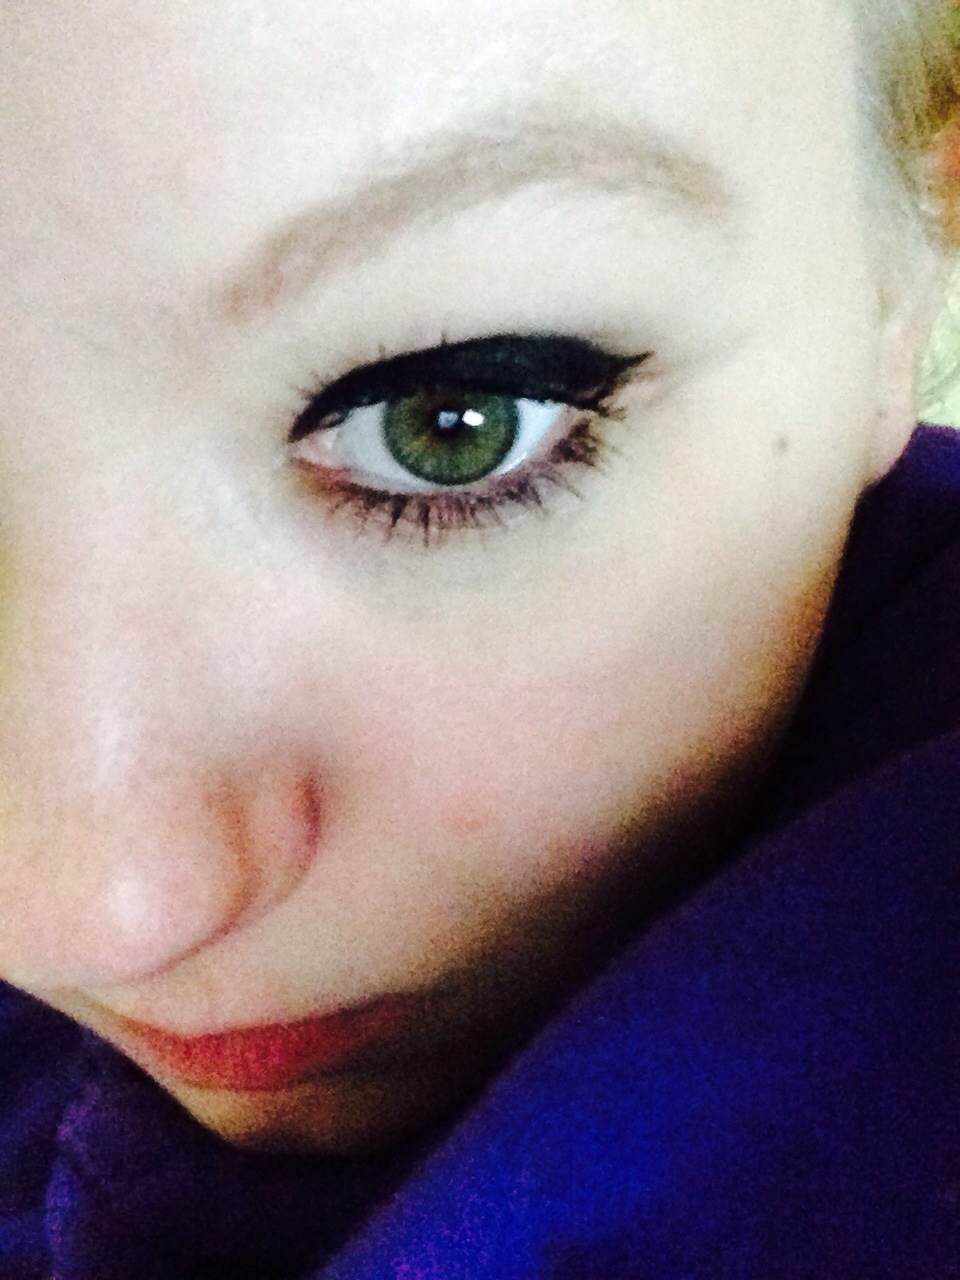 Maggie Degman selfie #24 highlight (1/31)